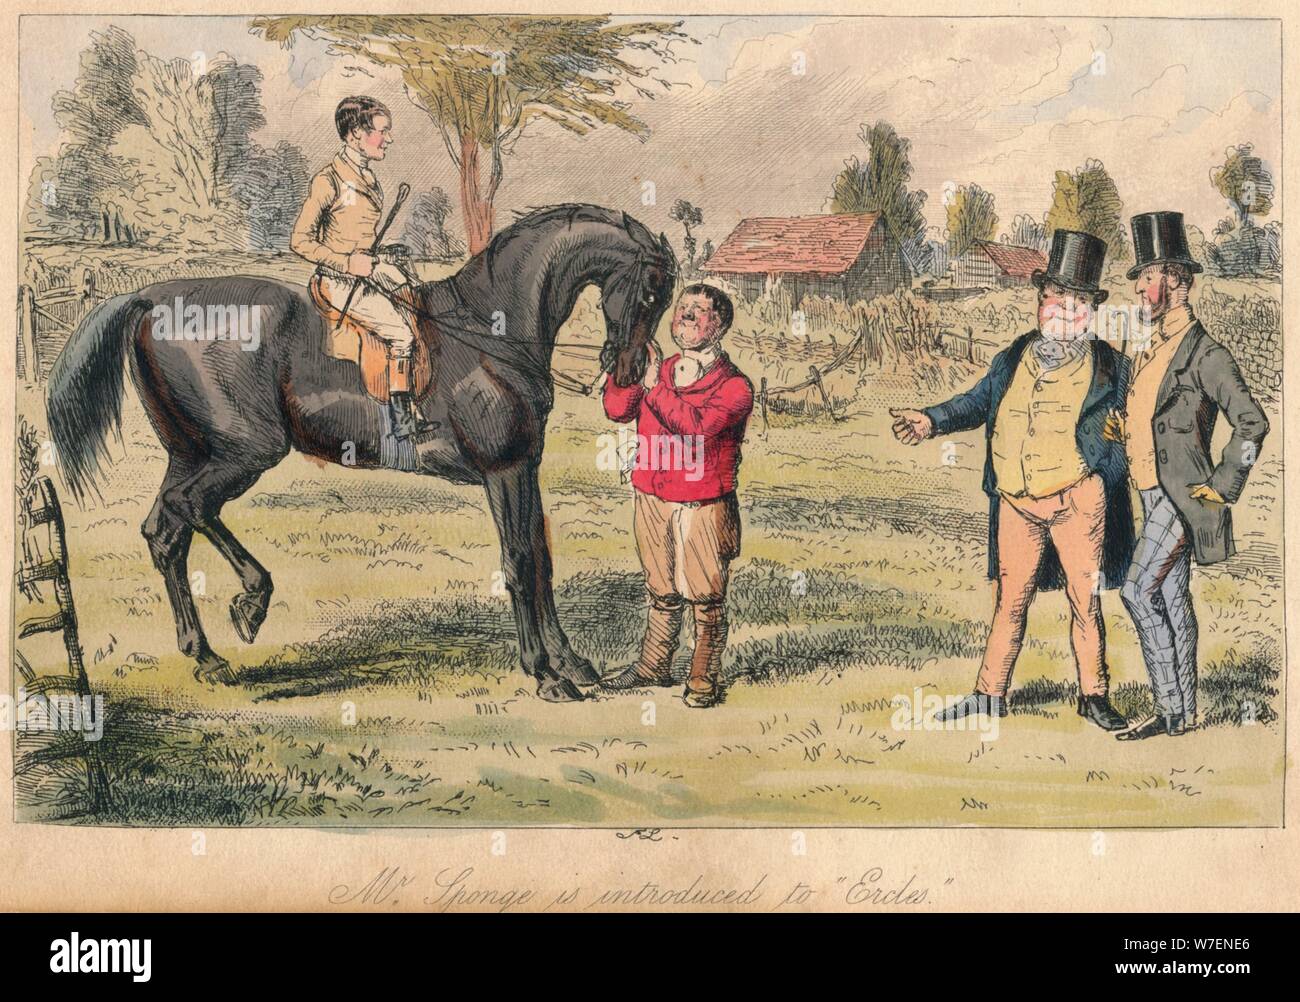 'Mr. Éponge est introduit à Ercles', 1865. Artistes : John Leech, Hablot Knight Browne. Banque D'Images